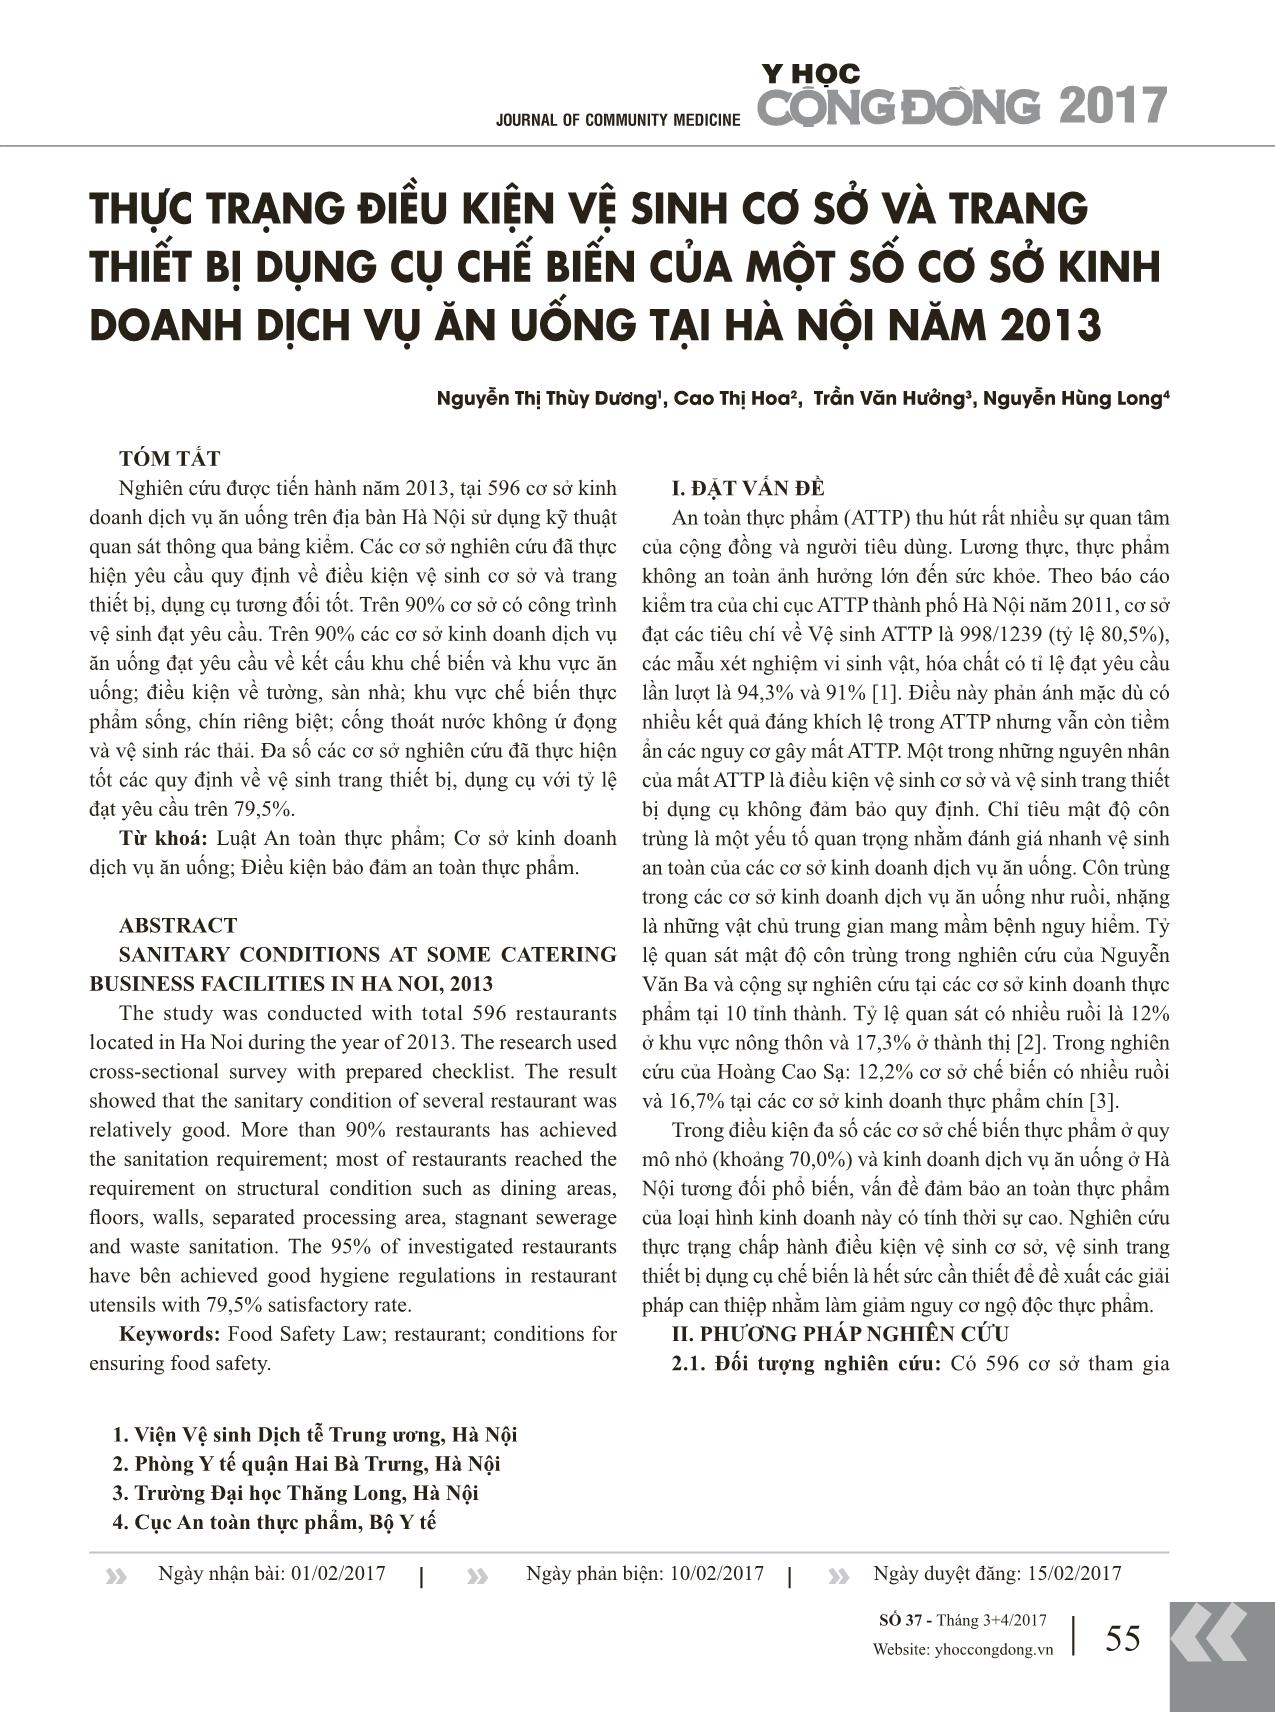 Thực trạng điều kiện vệ sinh cơ sở và trang thiết bị dụng cụ chế biến của một số cơ sở kinh doanh dịch vụ ăn uống tại Hà Nội năm 2013 trang 1